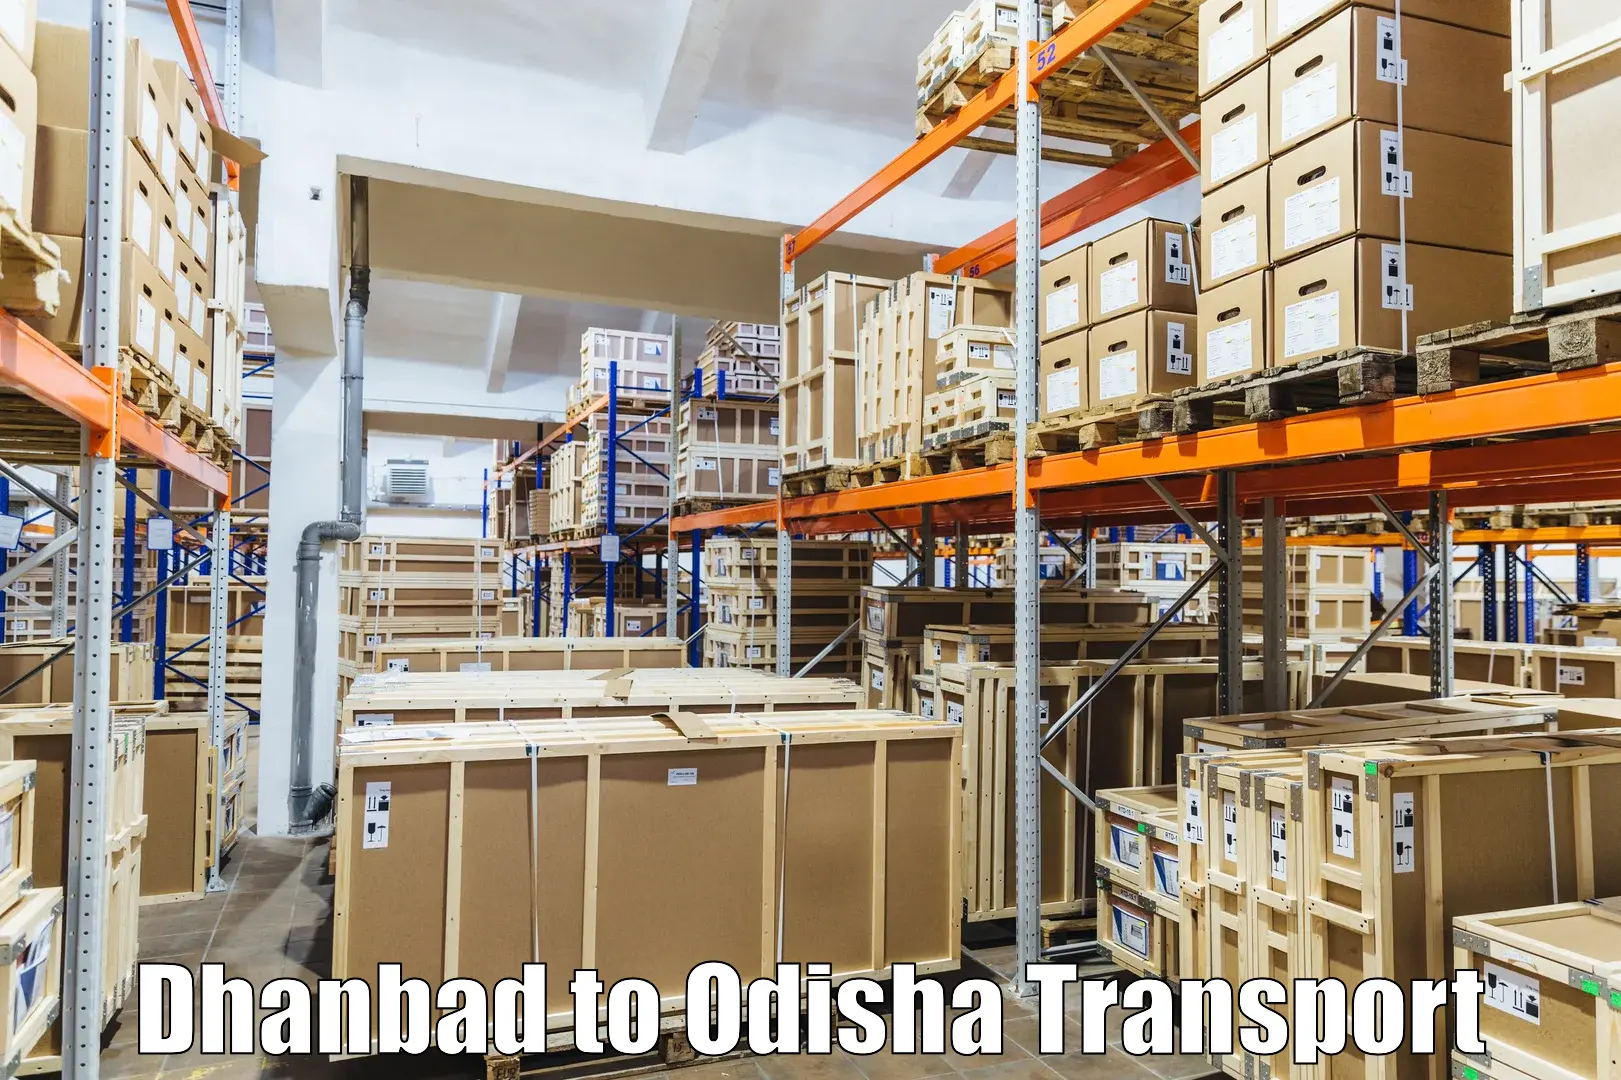 International cargo transportation services Dhanbad to Ukhunda